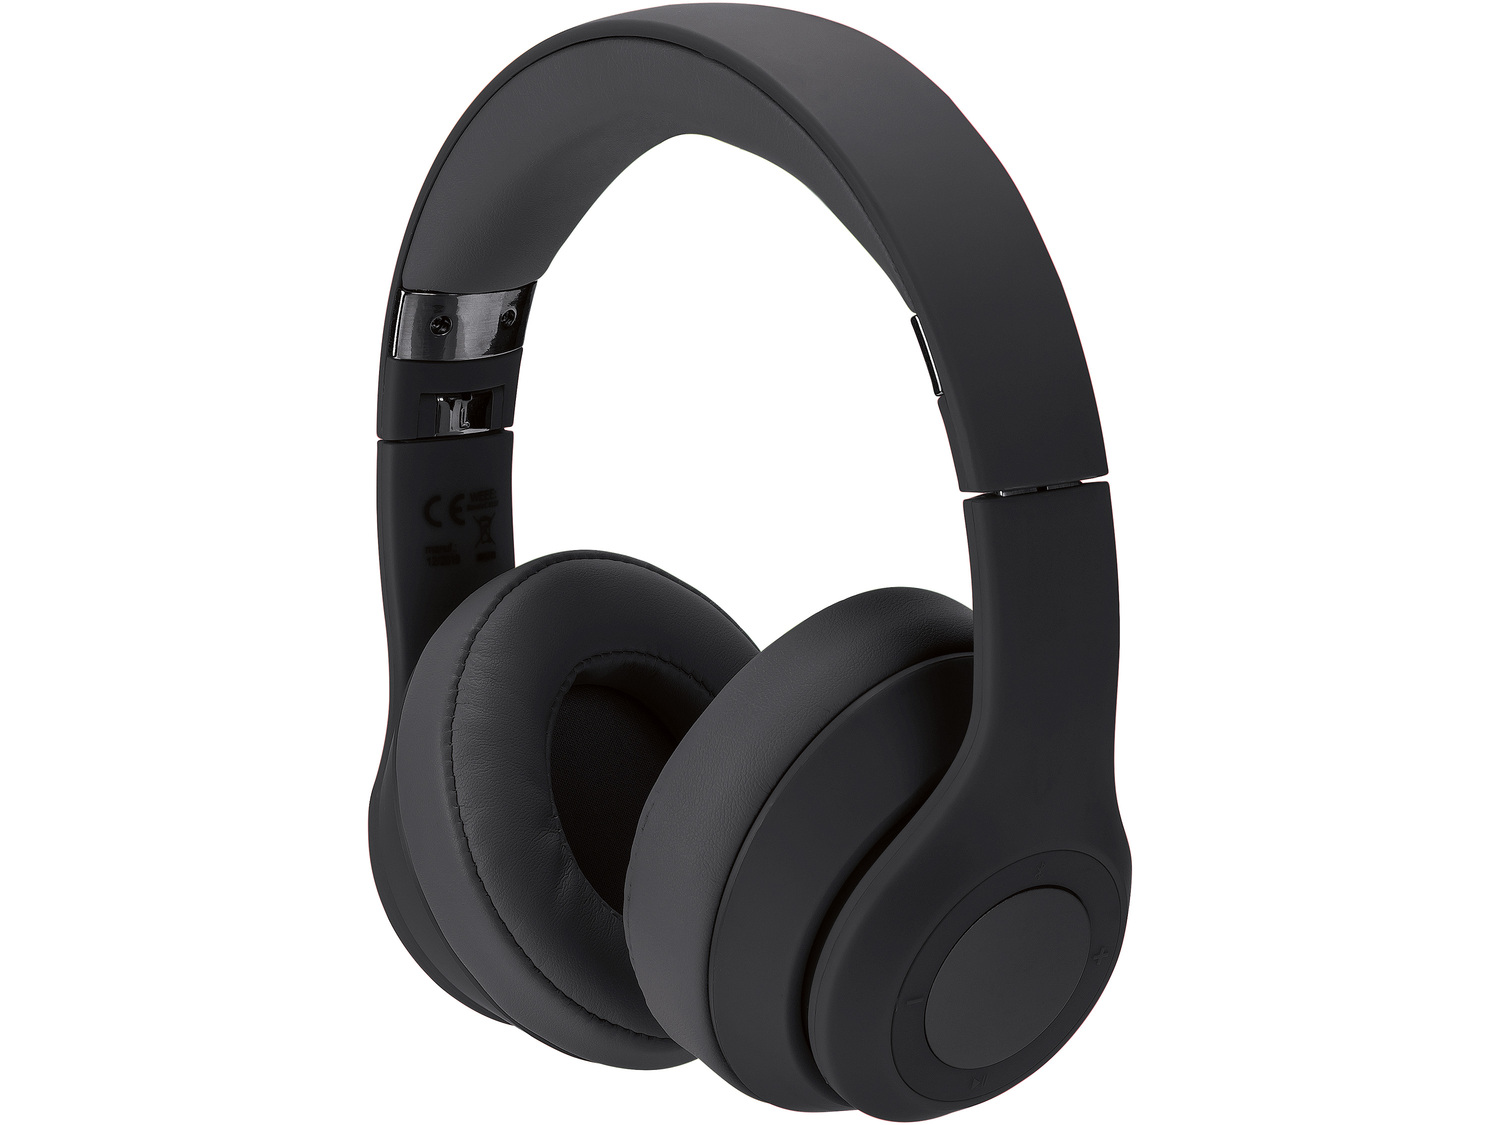 Słuchawki nauszne bezprzewodowe z Bluetooth® Silvercrest, cena 79,00 PLN 
różne ...